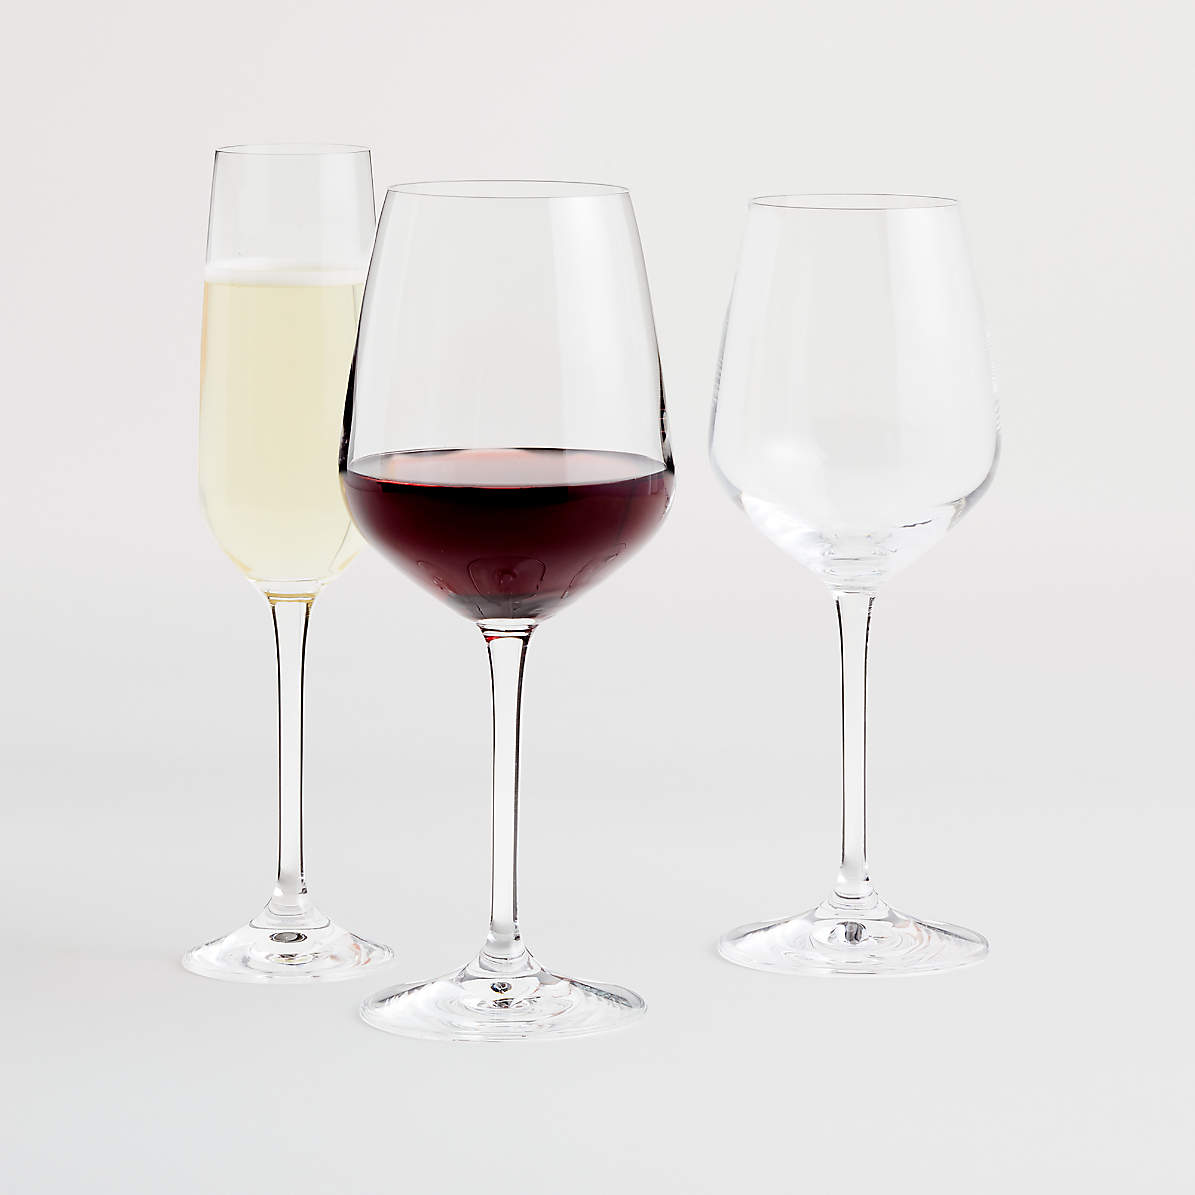 udpege Færøerne lounge Nattie Wine Glasses | Crate & Barrel